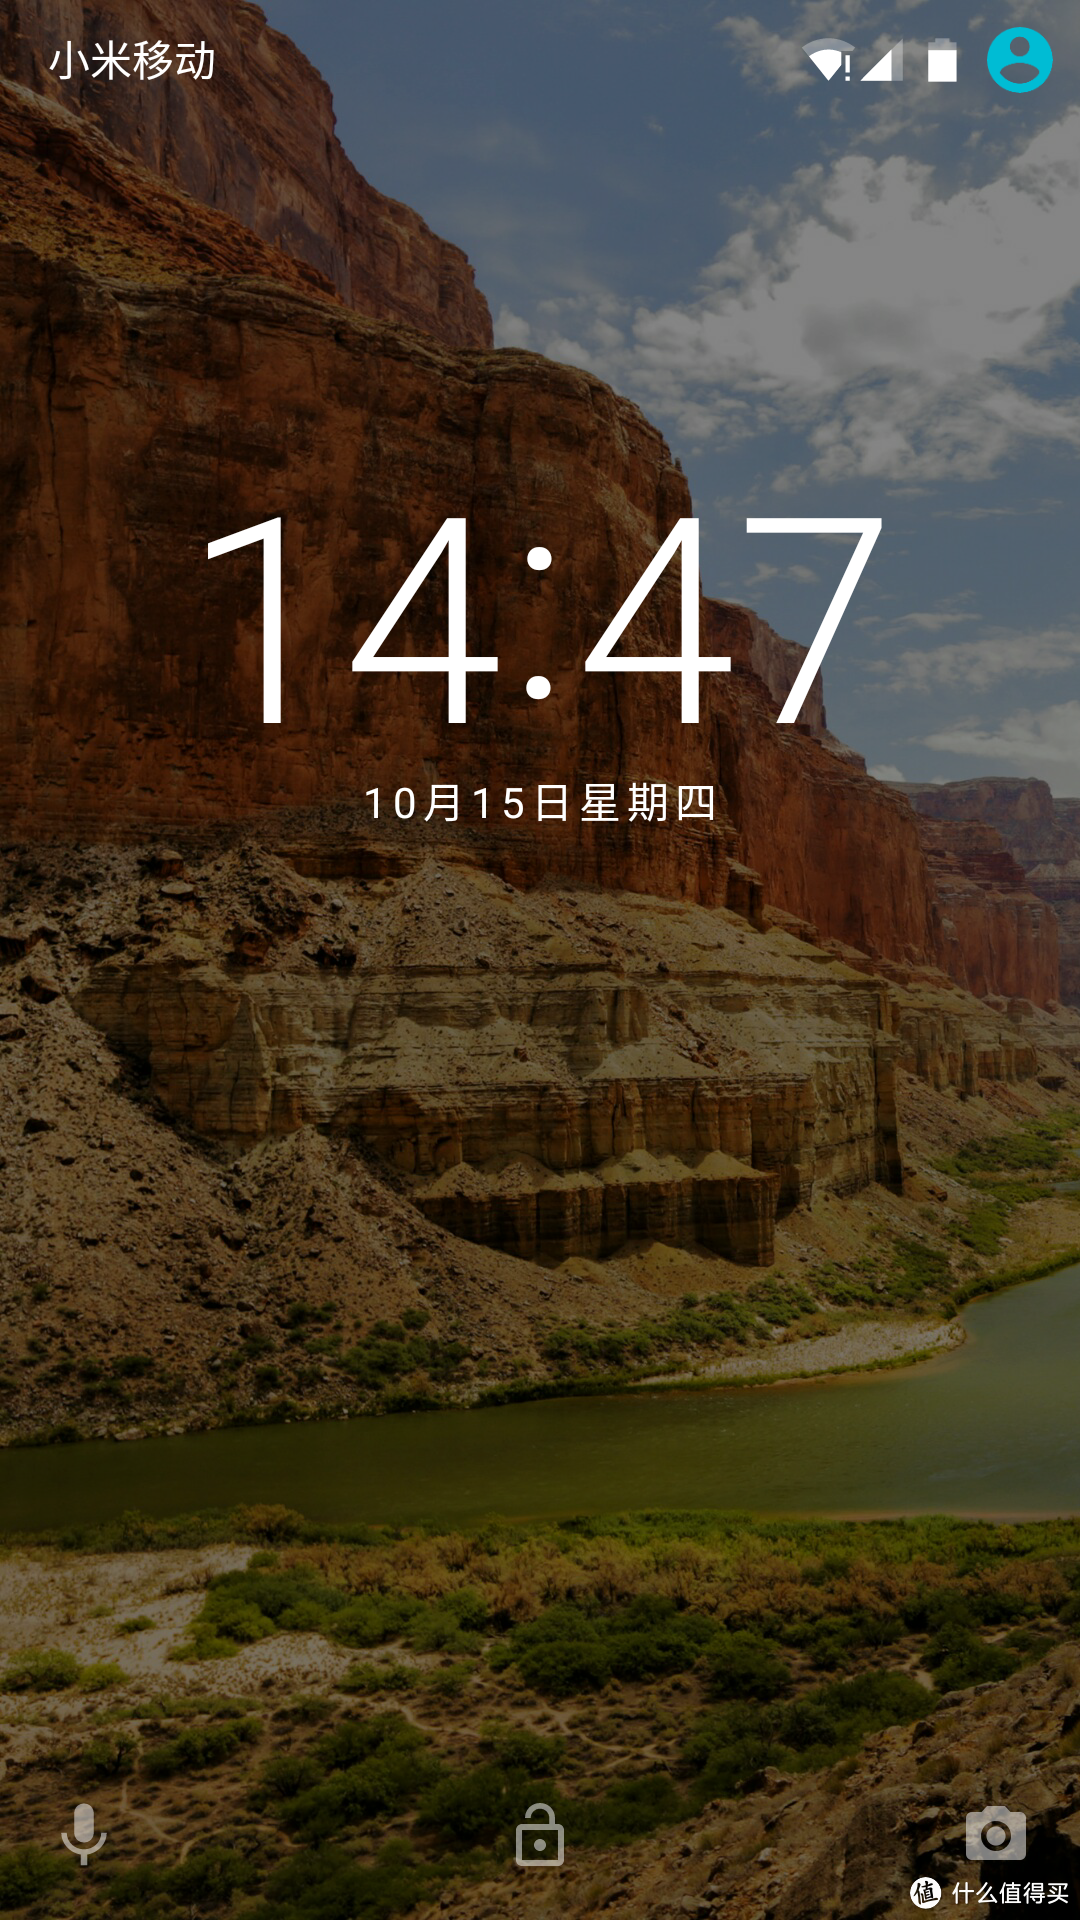 当安卓遇上棉花糖——Android 6.0体验